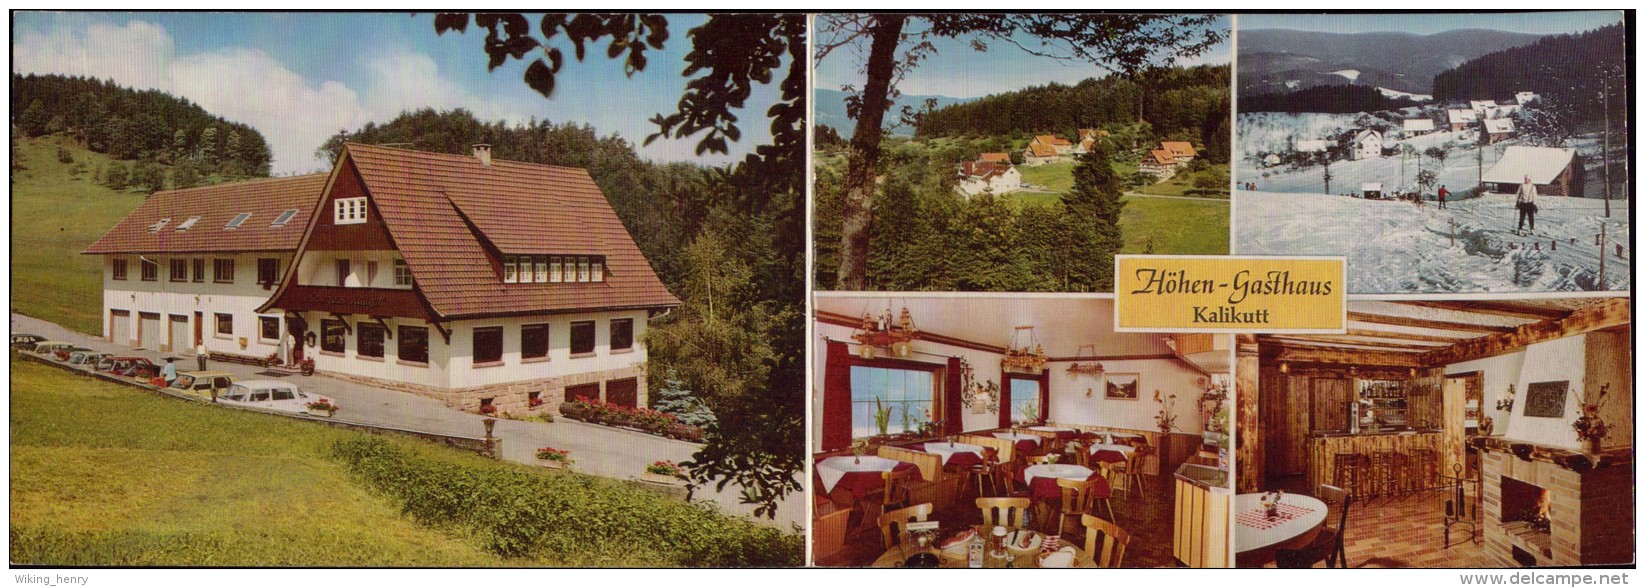 Oppenau Ramsbach - Höhen Gasthaus Kalikutt   Werbe Doppelkarte - Oppenau